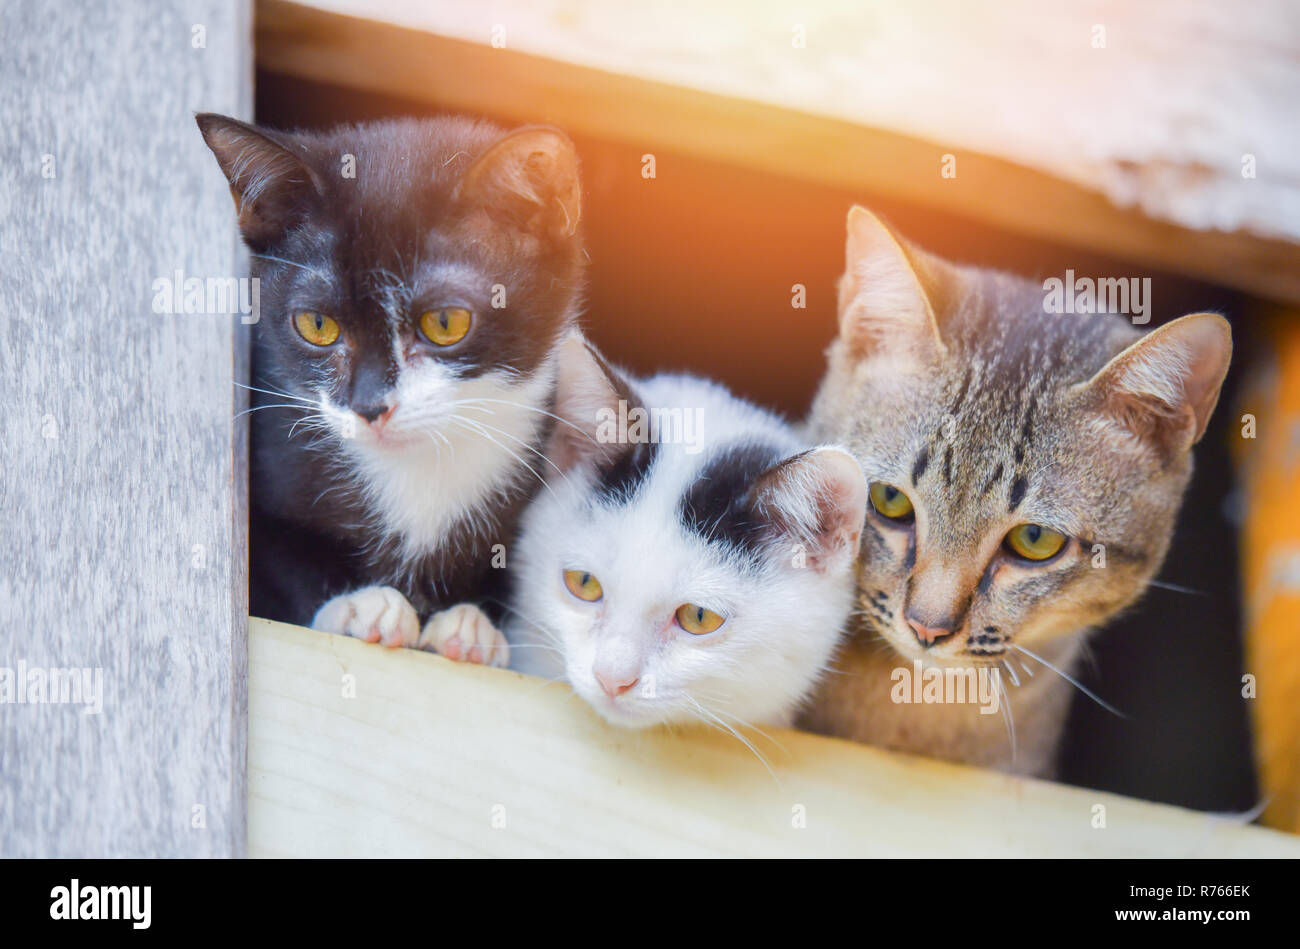 Kitten süße Katze/drei whit Schwarz und wrown Tabby cat Brüder Multi Color  Kitten auf Fenster außerhalb - Asien thai Katze traurig Tier Haustier  suchen Stockfotografie - Alamy